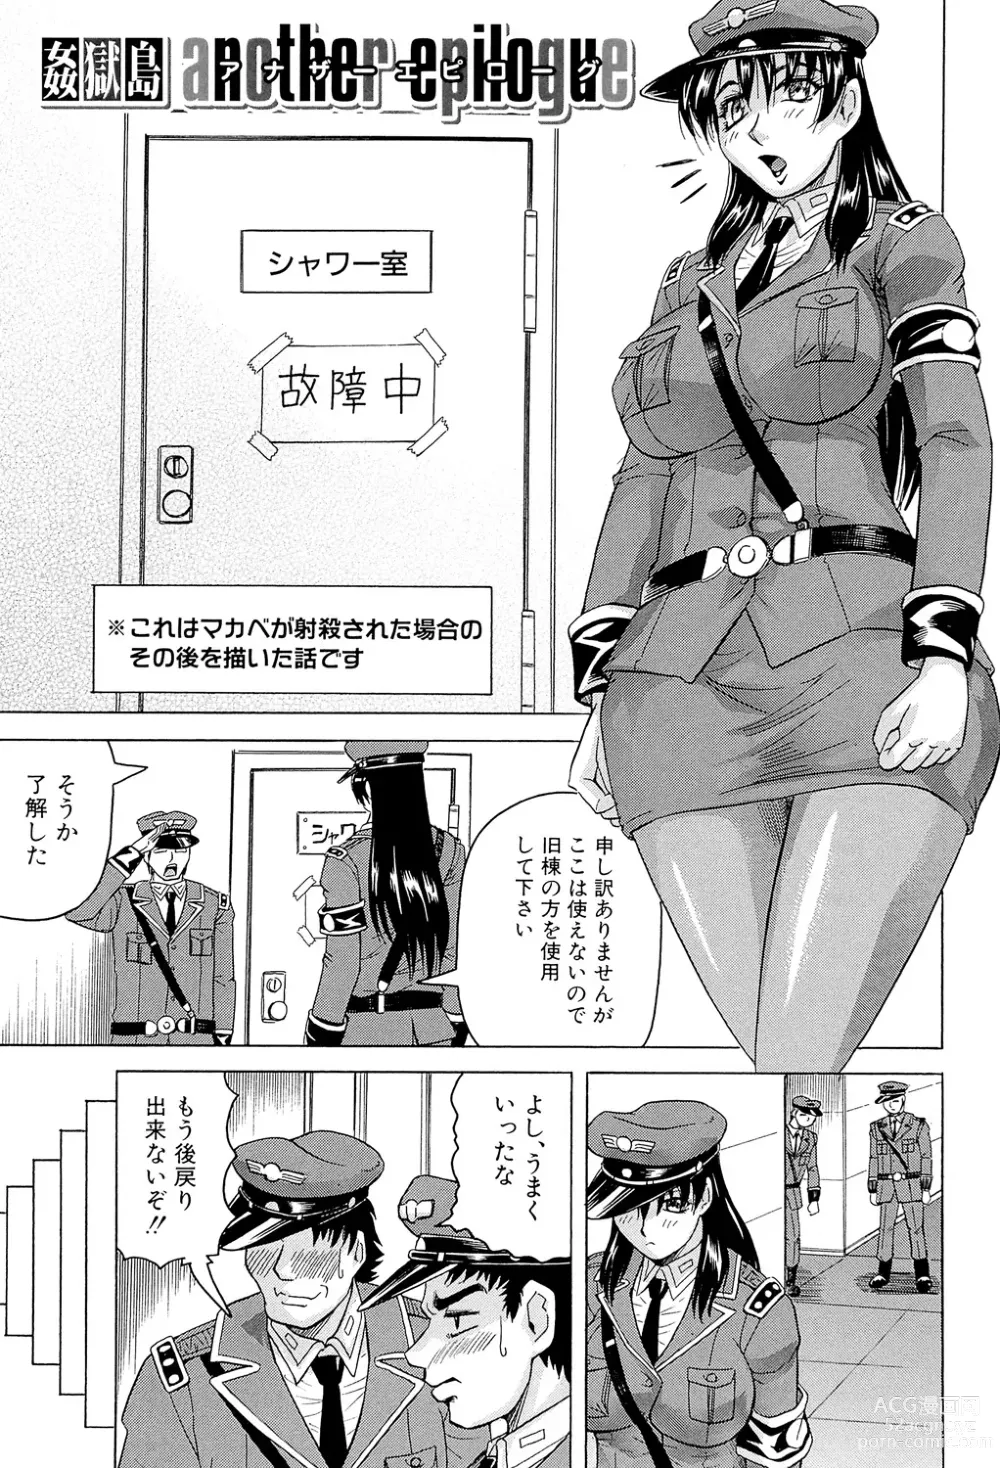 Page 203 of manga Kangokujima